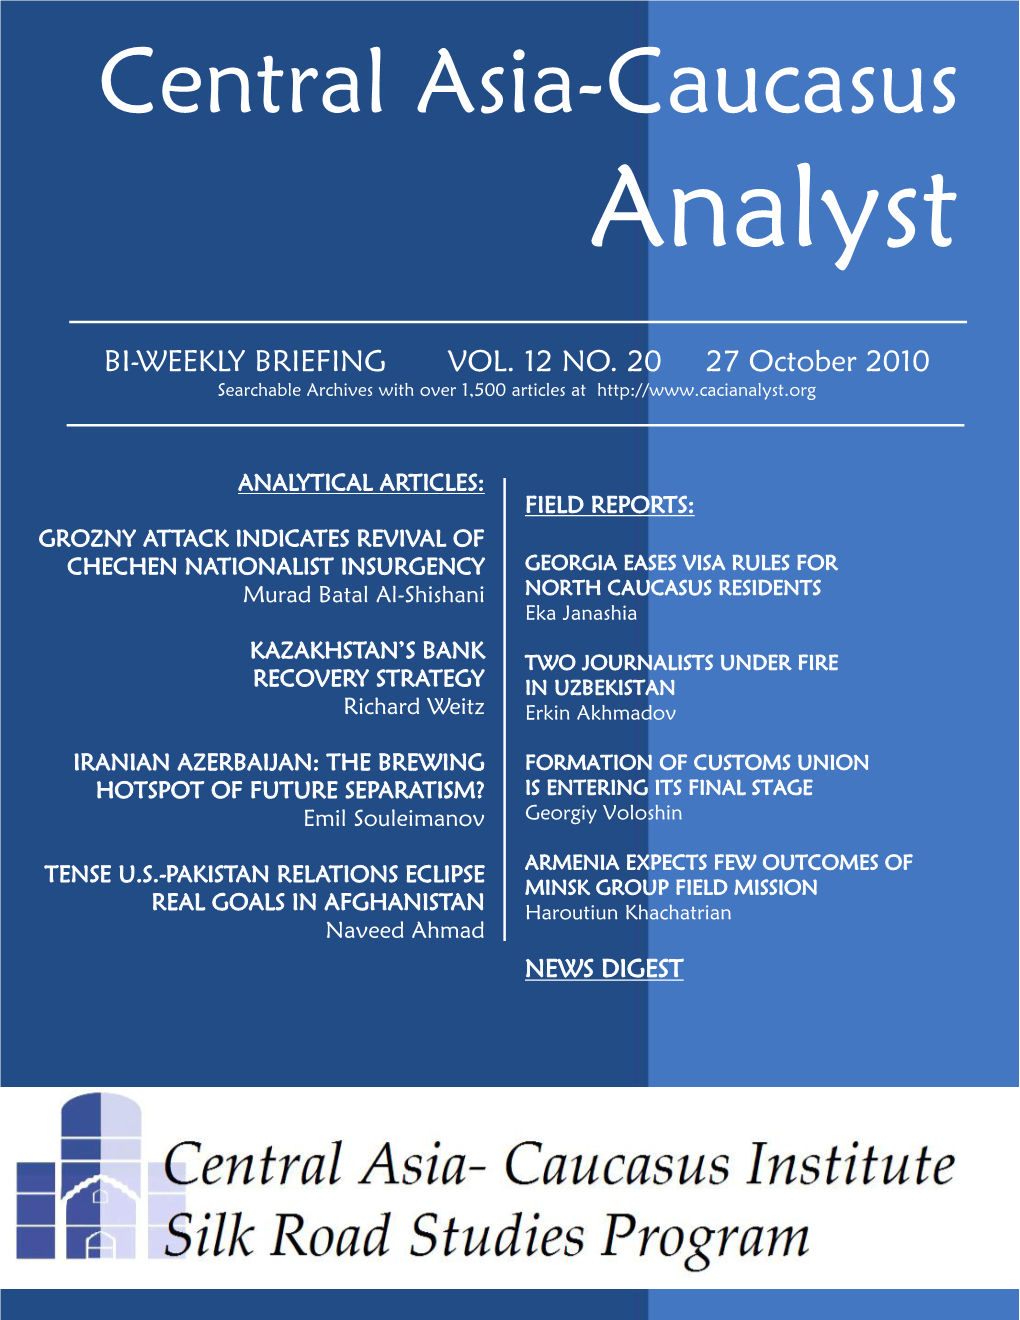 Central Asia-Caucasus Analyst Vol 12, No 20